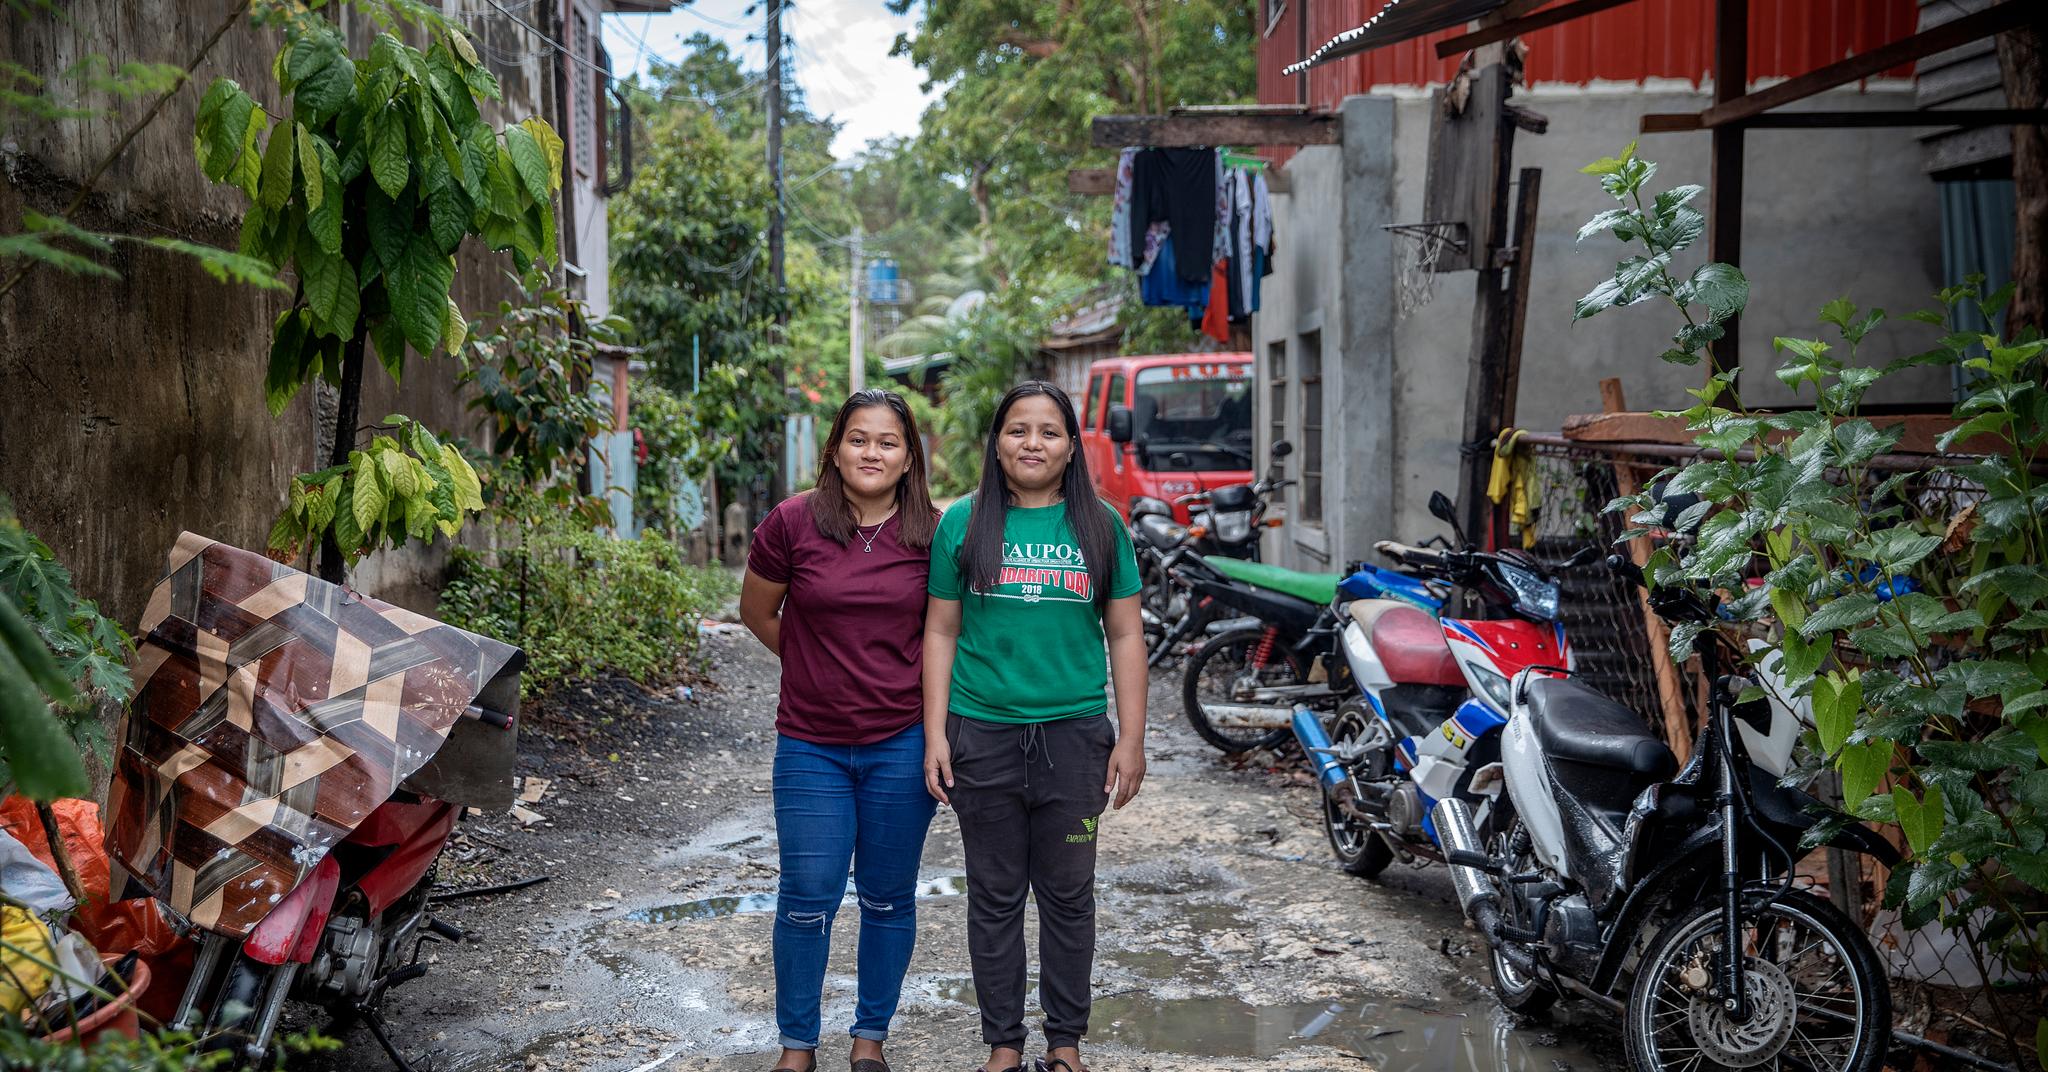 For Angelee (27) og Key (28) fra Filippinene er det noe helt annet. De drømmer om å jobbe for en familie i Skandinavia.